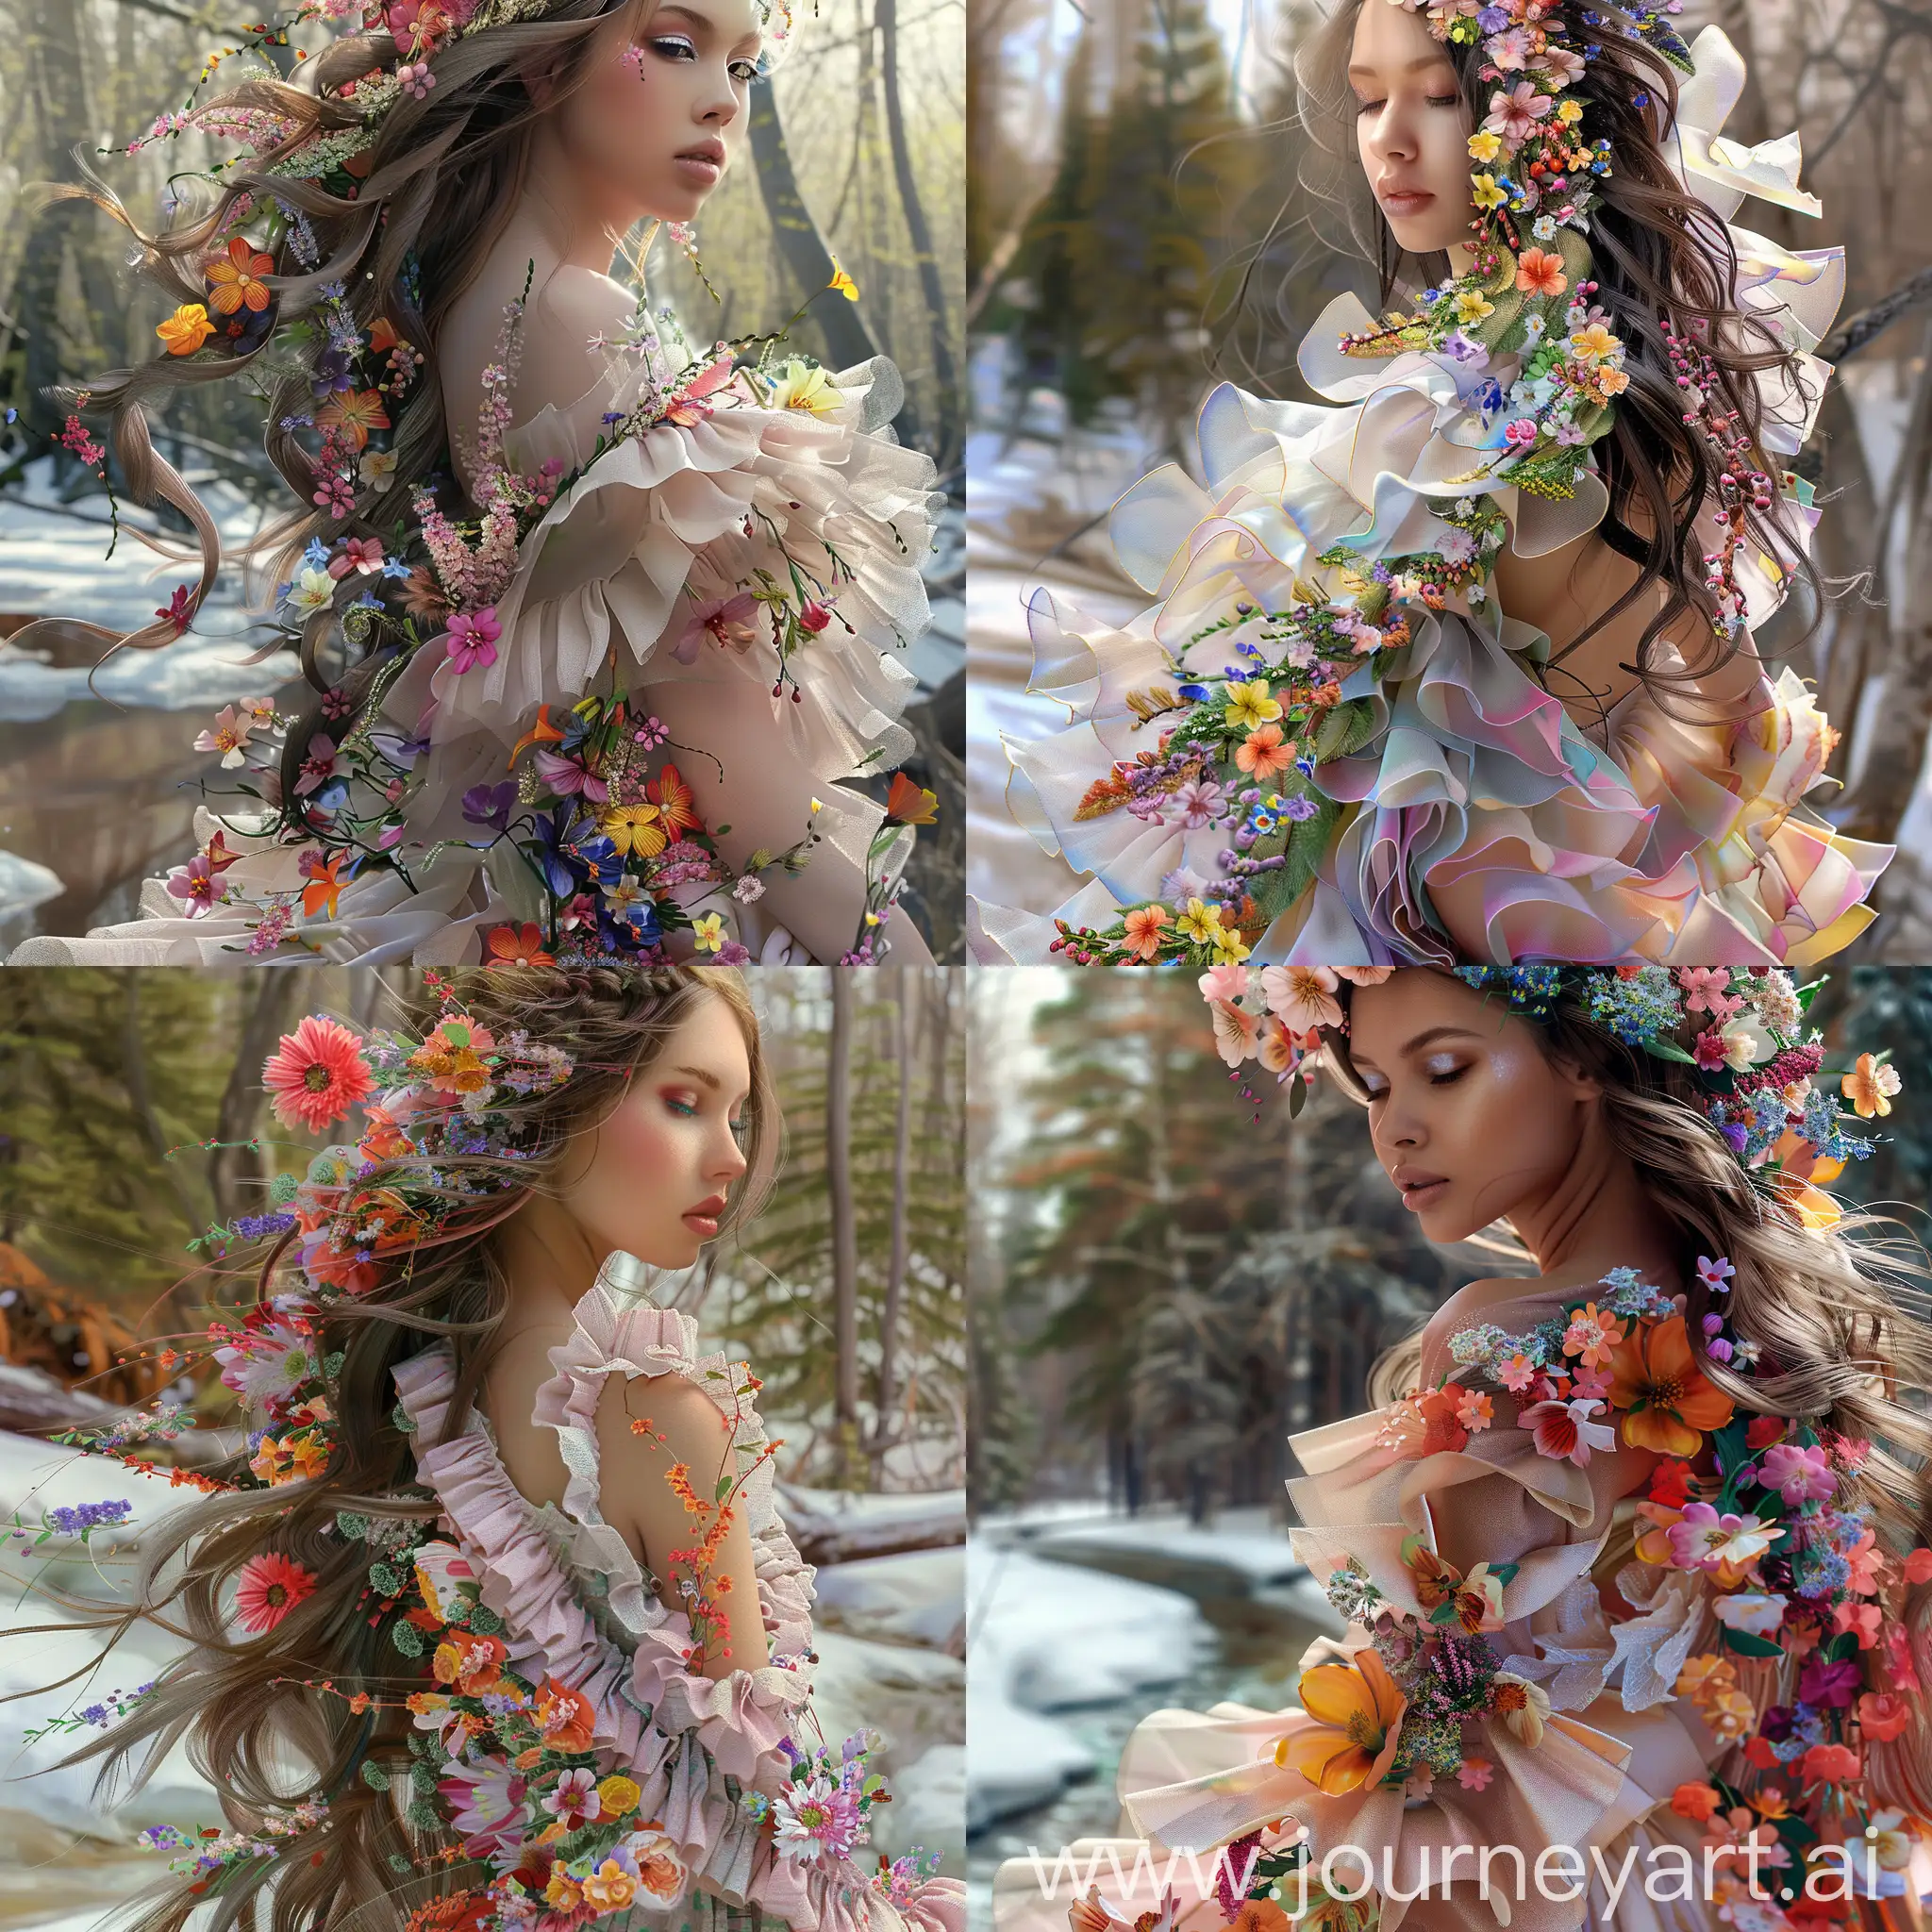 красивая женщина крупным планом, ее роскошные длинные волосы спадают каскадом из цветов и ярким красочным цветочным шлейфом украшают фигуру женщины, на ней светлое платье, оборки платья украшены весенними цветами, женщина на фоне растаевшего снега, на заднем плане лес встречающий весну, реализм. v6